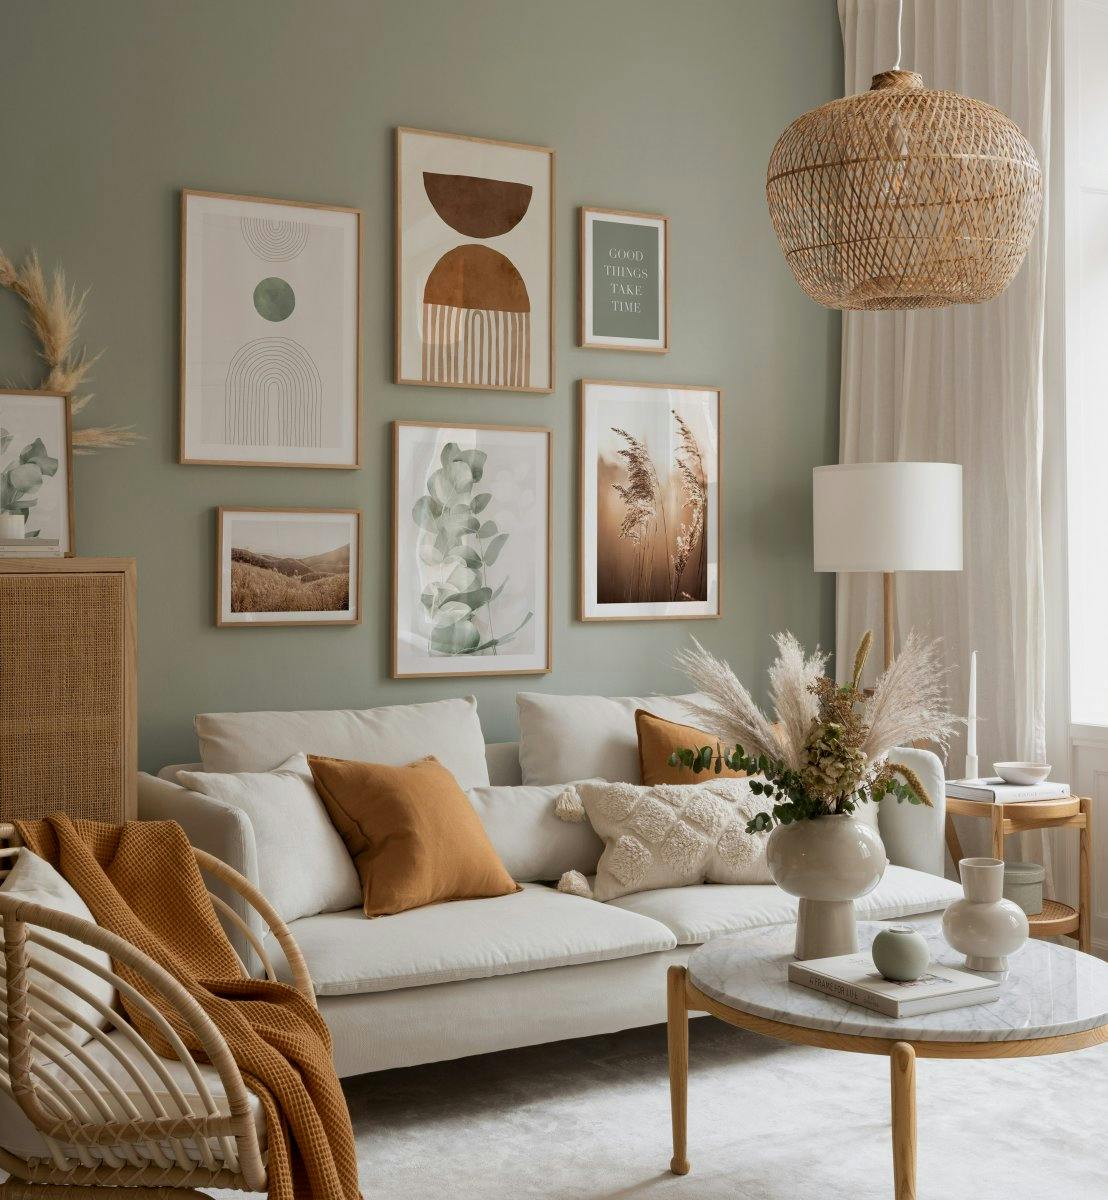 Arte astratta, citazioni e fotografie in colori sobri per il soggiorno